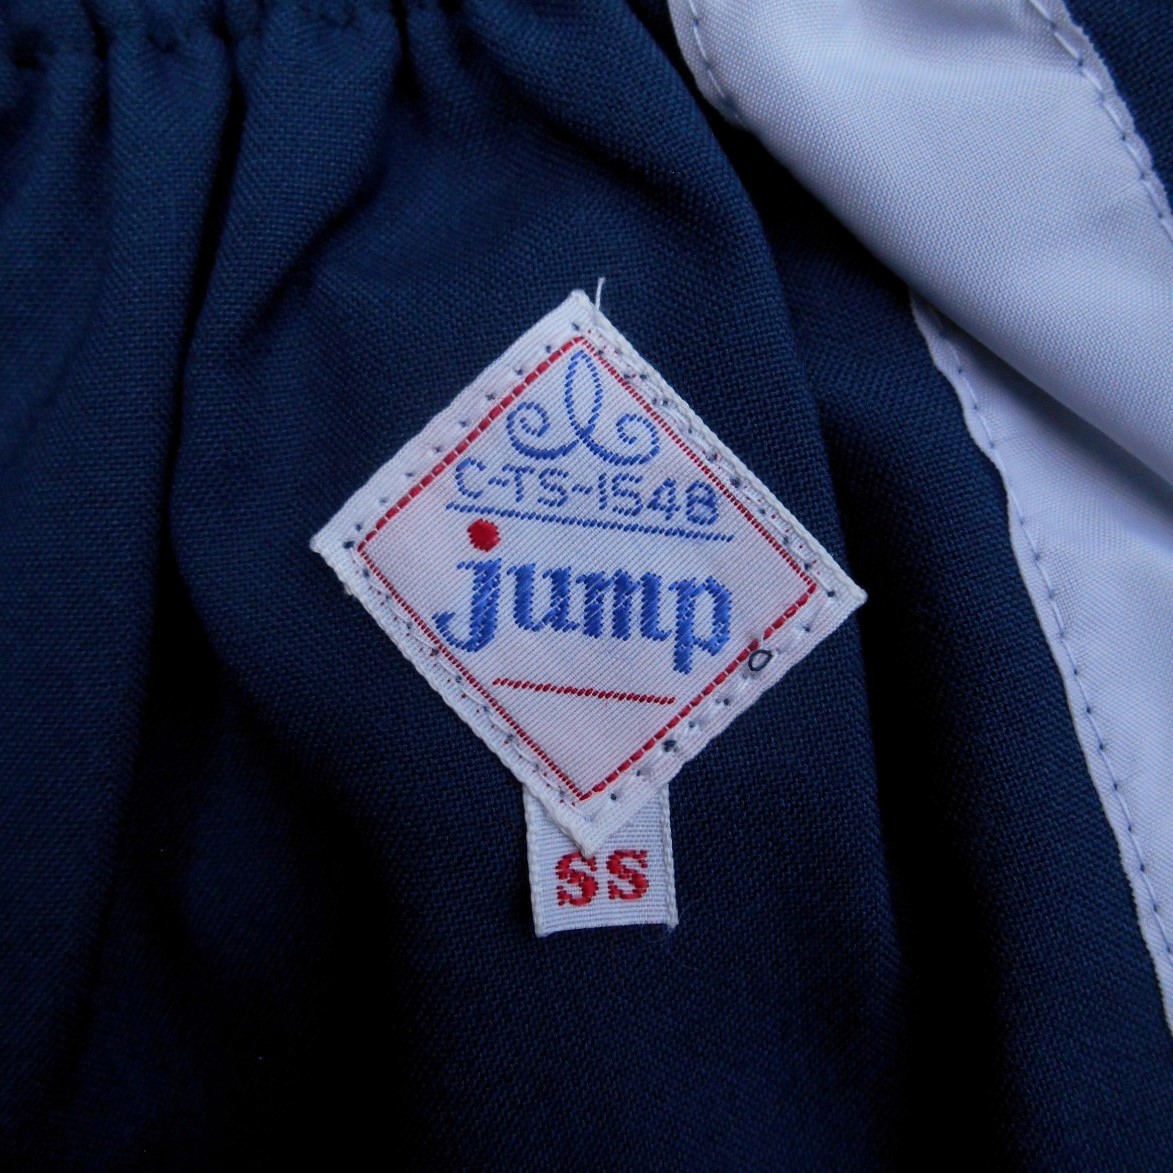 未使用 '80s JUMP ジャンプ SS ネイビーxグレー XS 紺灰 ショートパンツ 短パン 当時物 デッドストック 昭和 女子 男子 体操服 体育着 学校_画像7